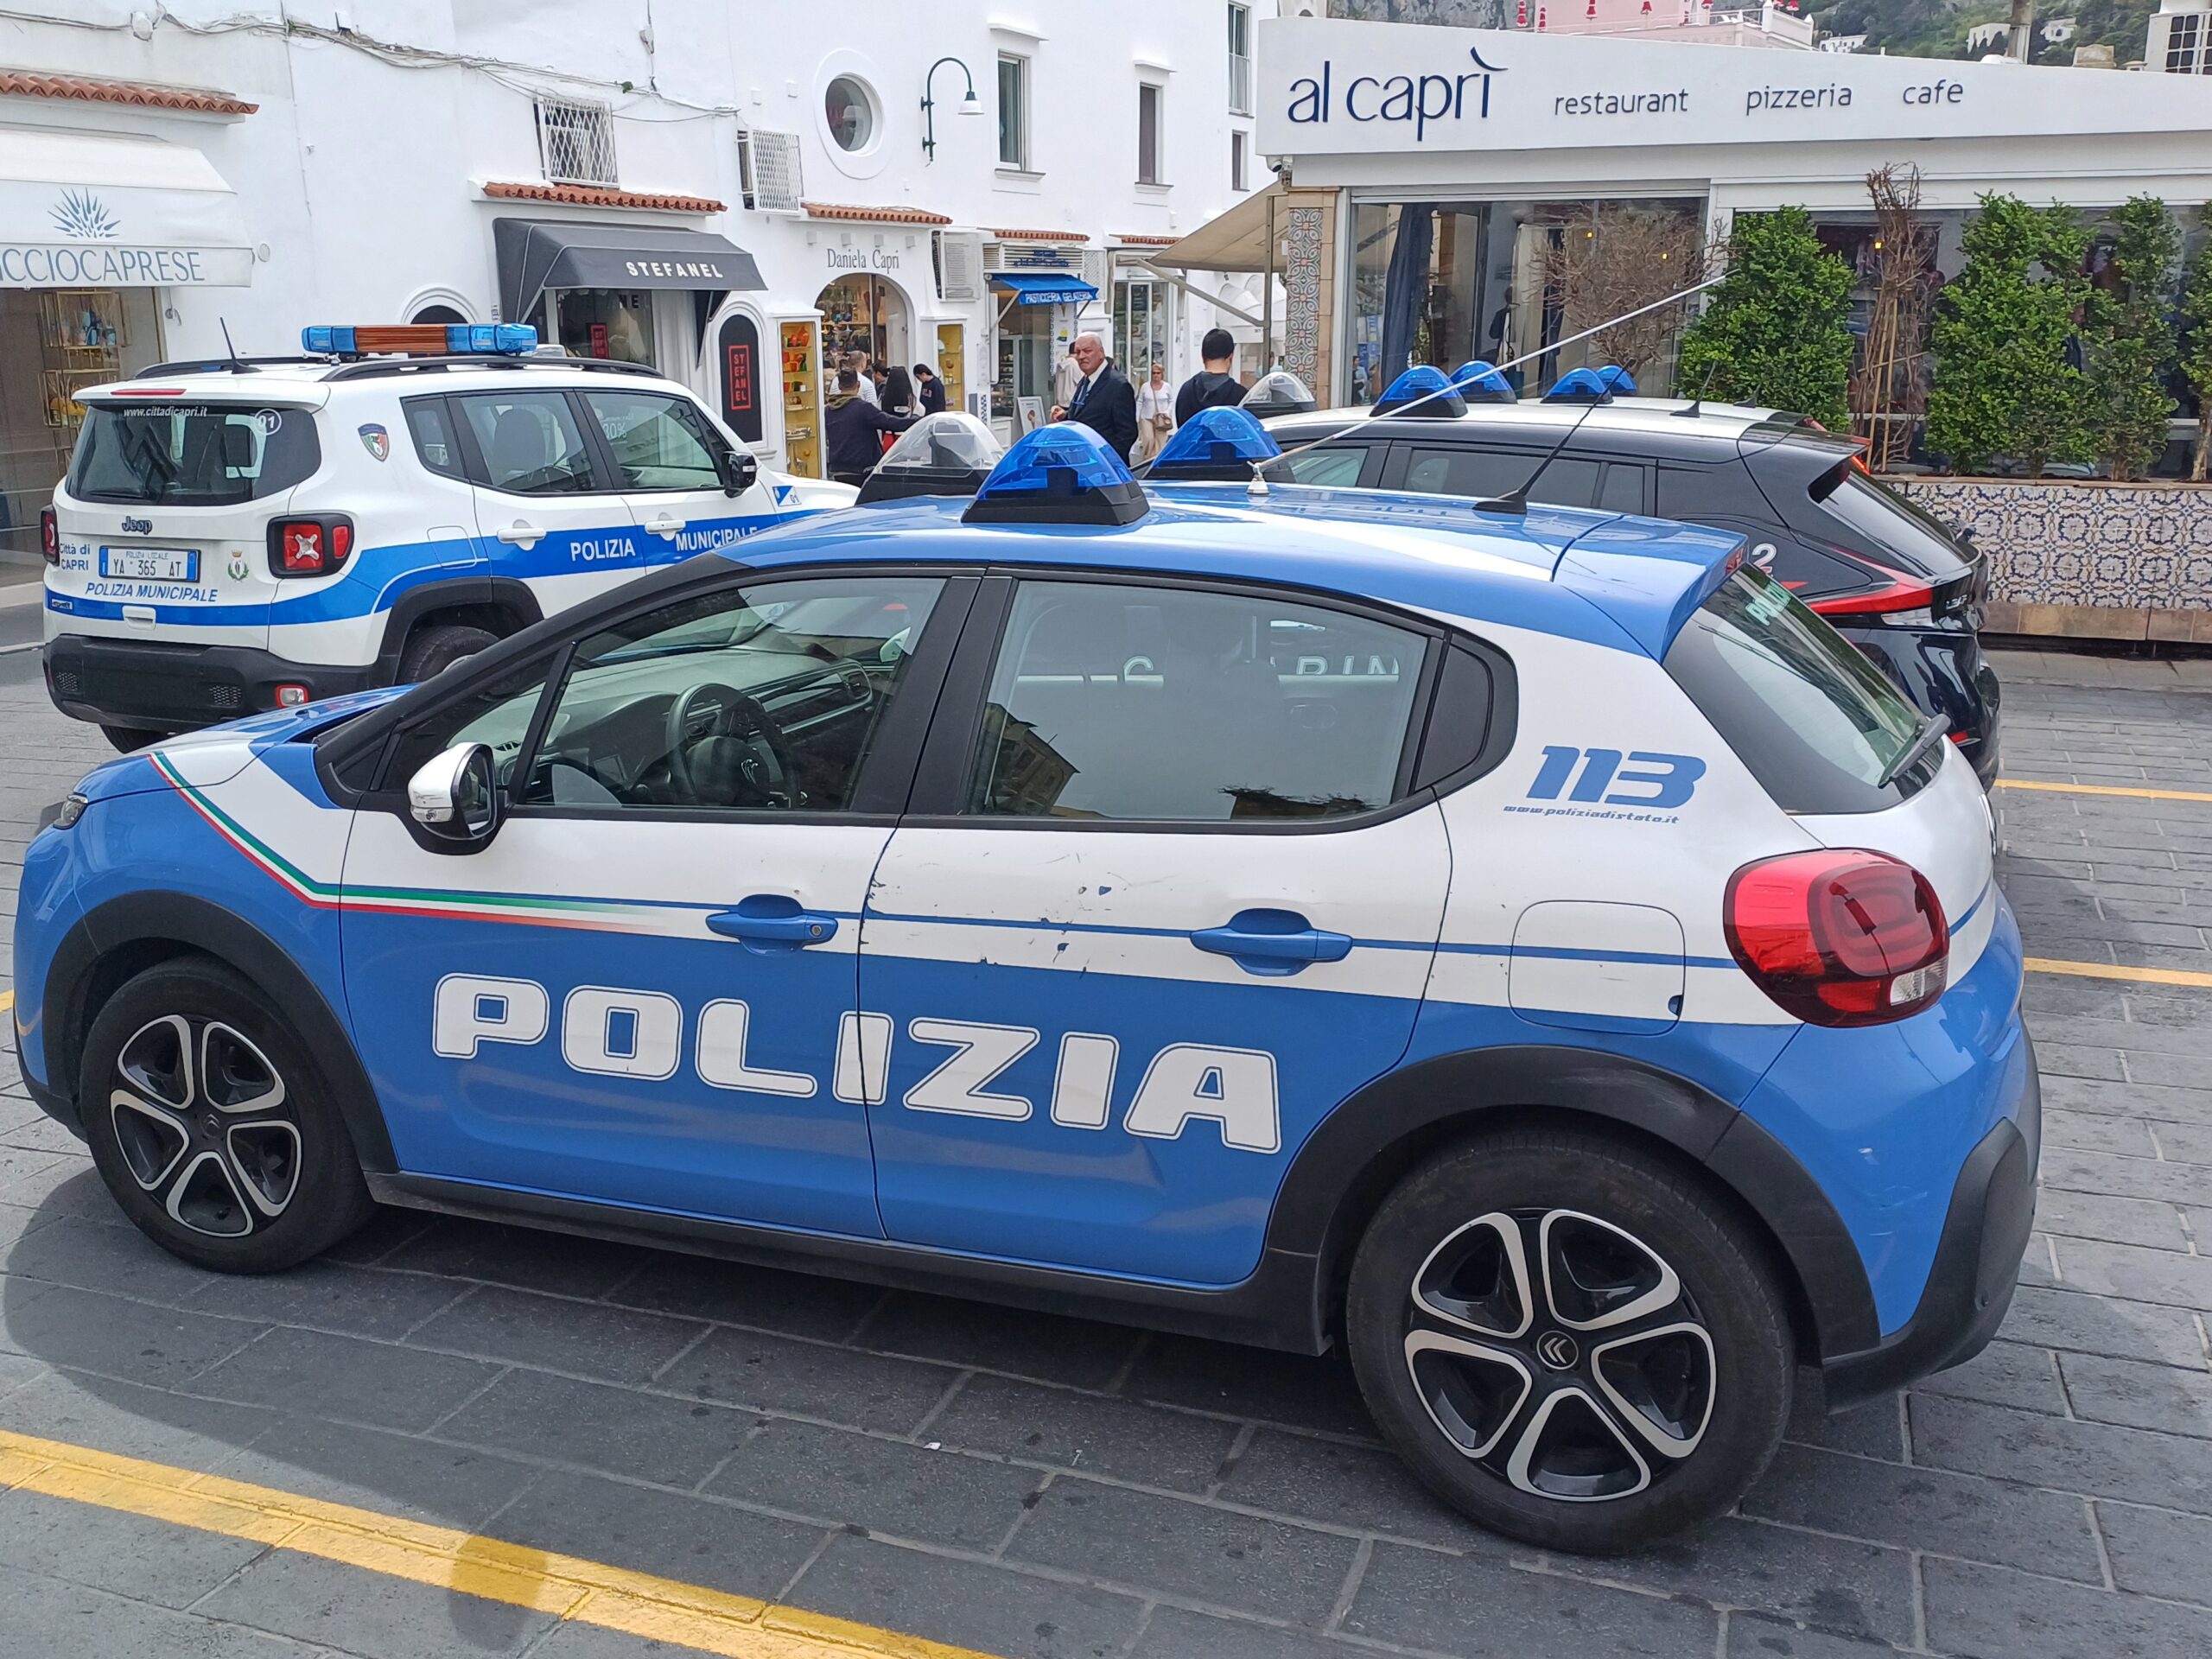 Imponenti misure di sicurezza a Capri per il summit G7 degli esteri